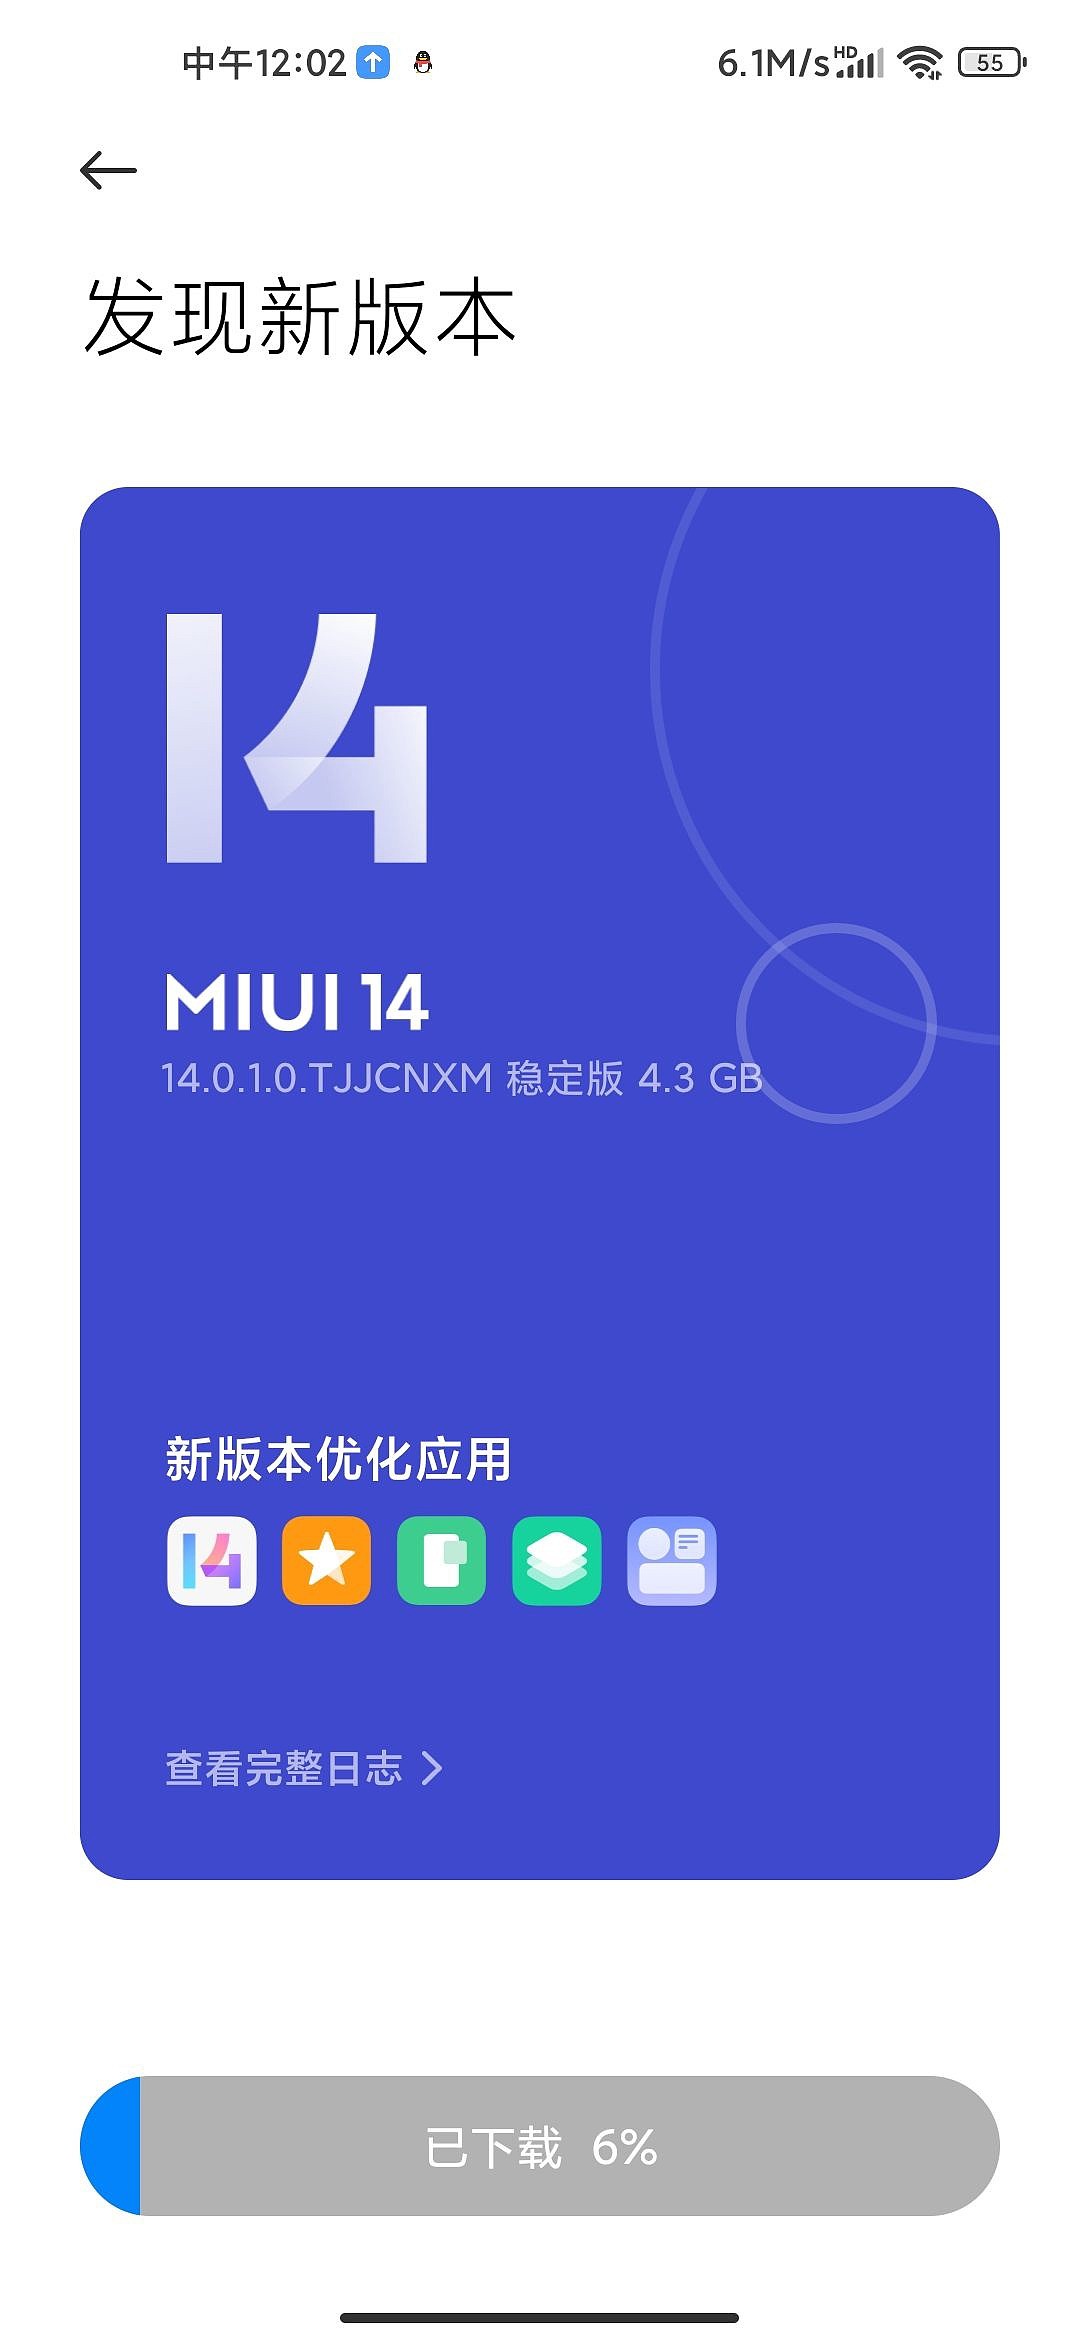 小米 10 至尊纪念版手机推送 MIUI 14 更新 - 1